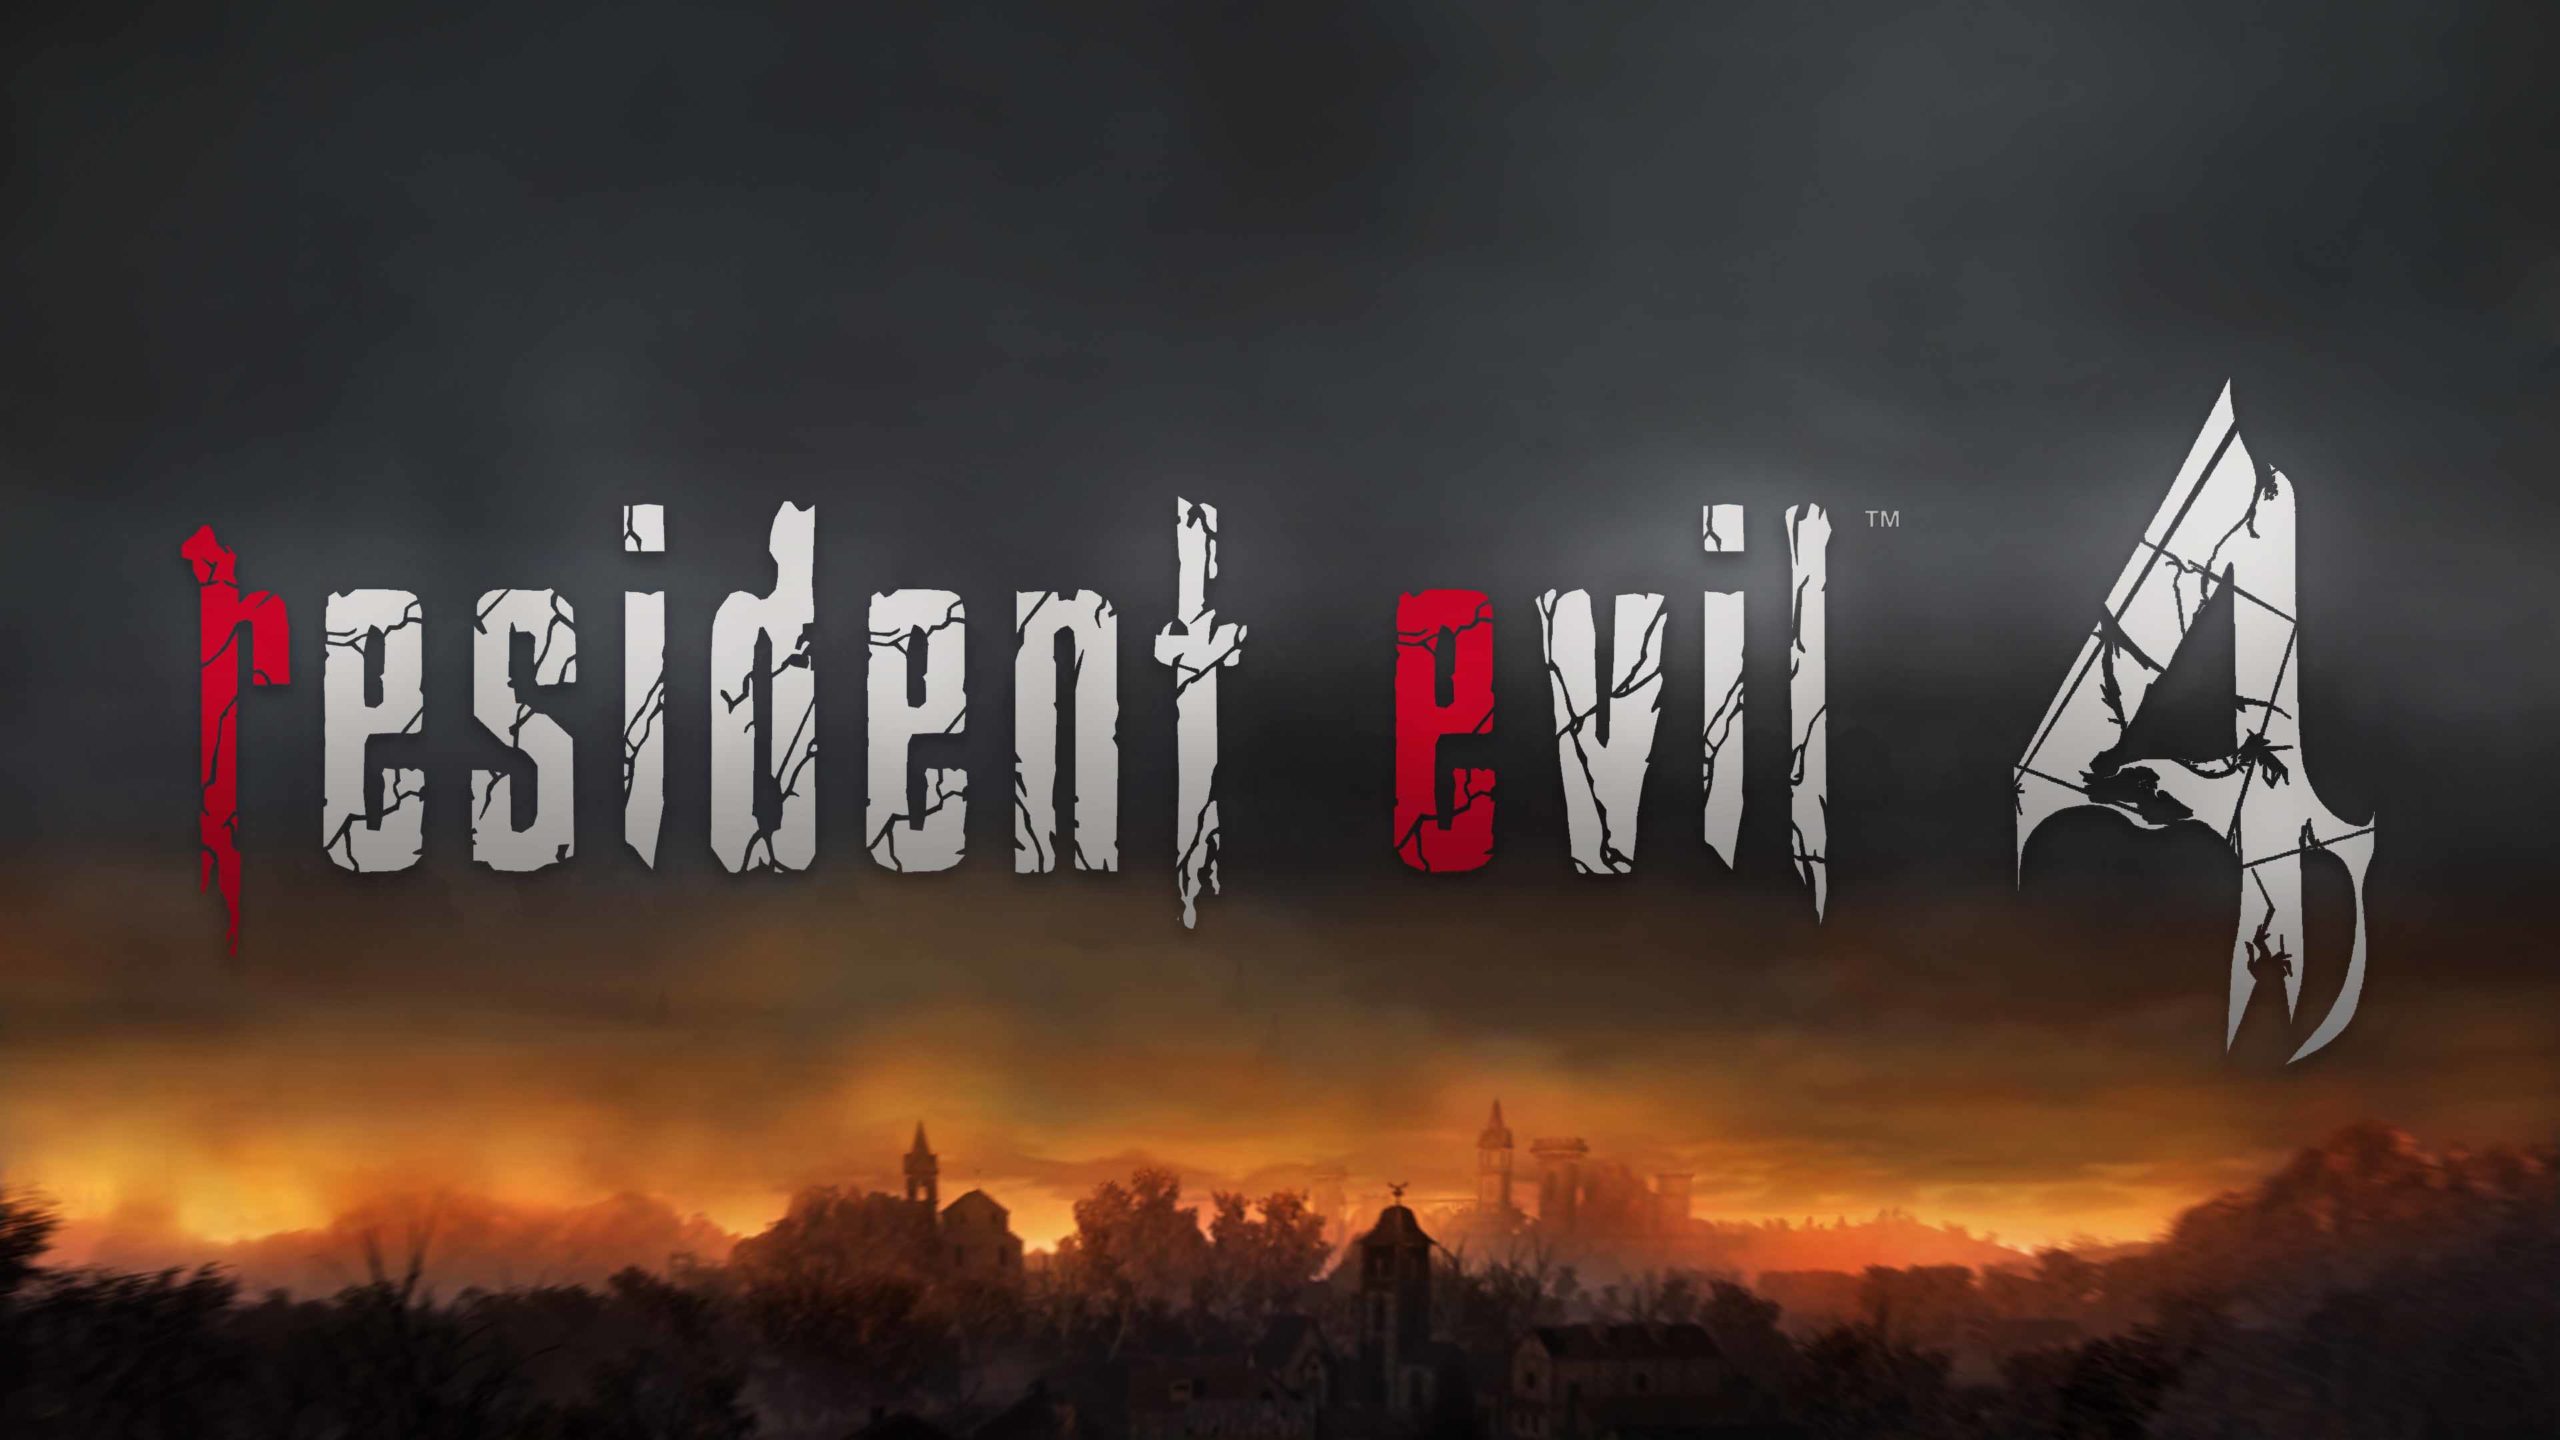 resident evil 2 remake playstation 4